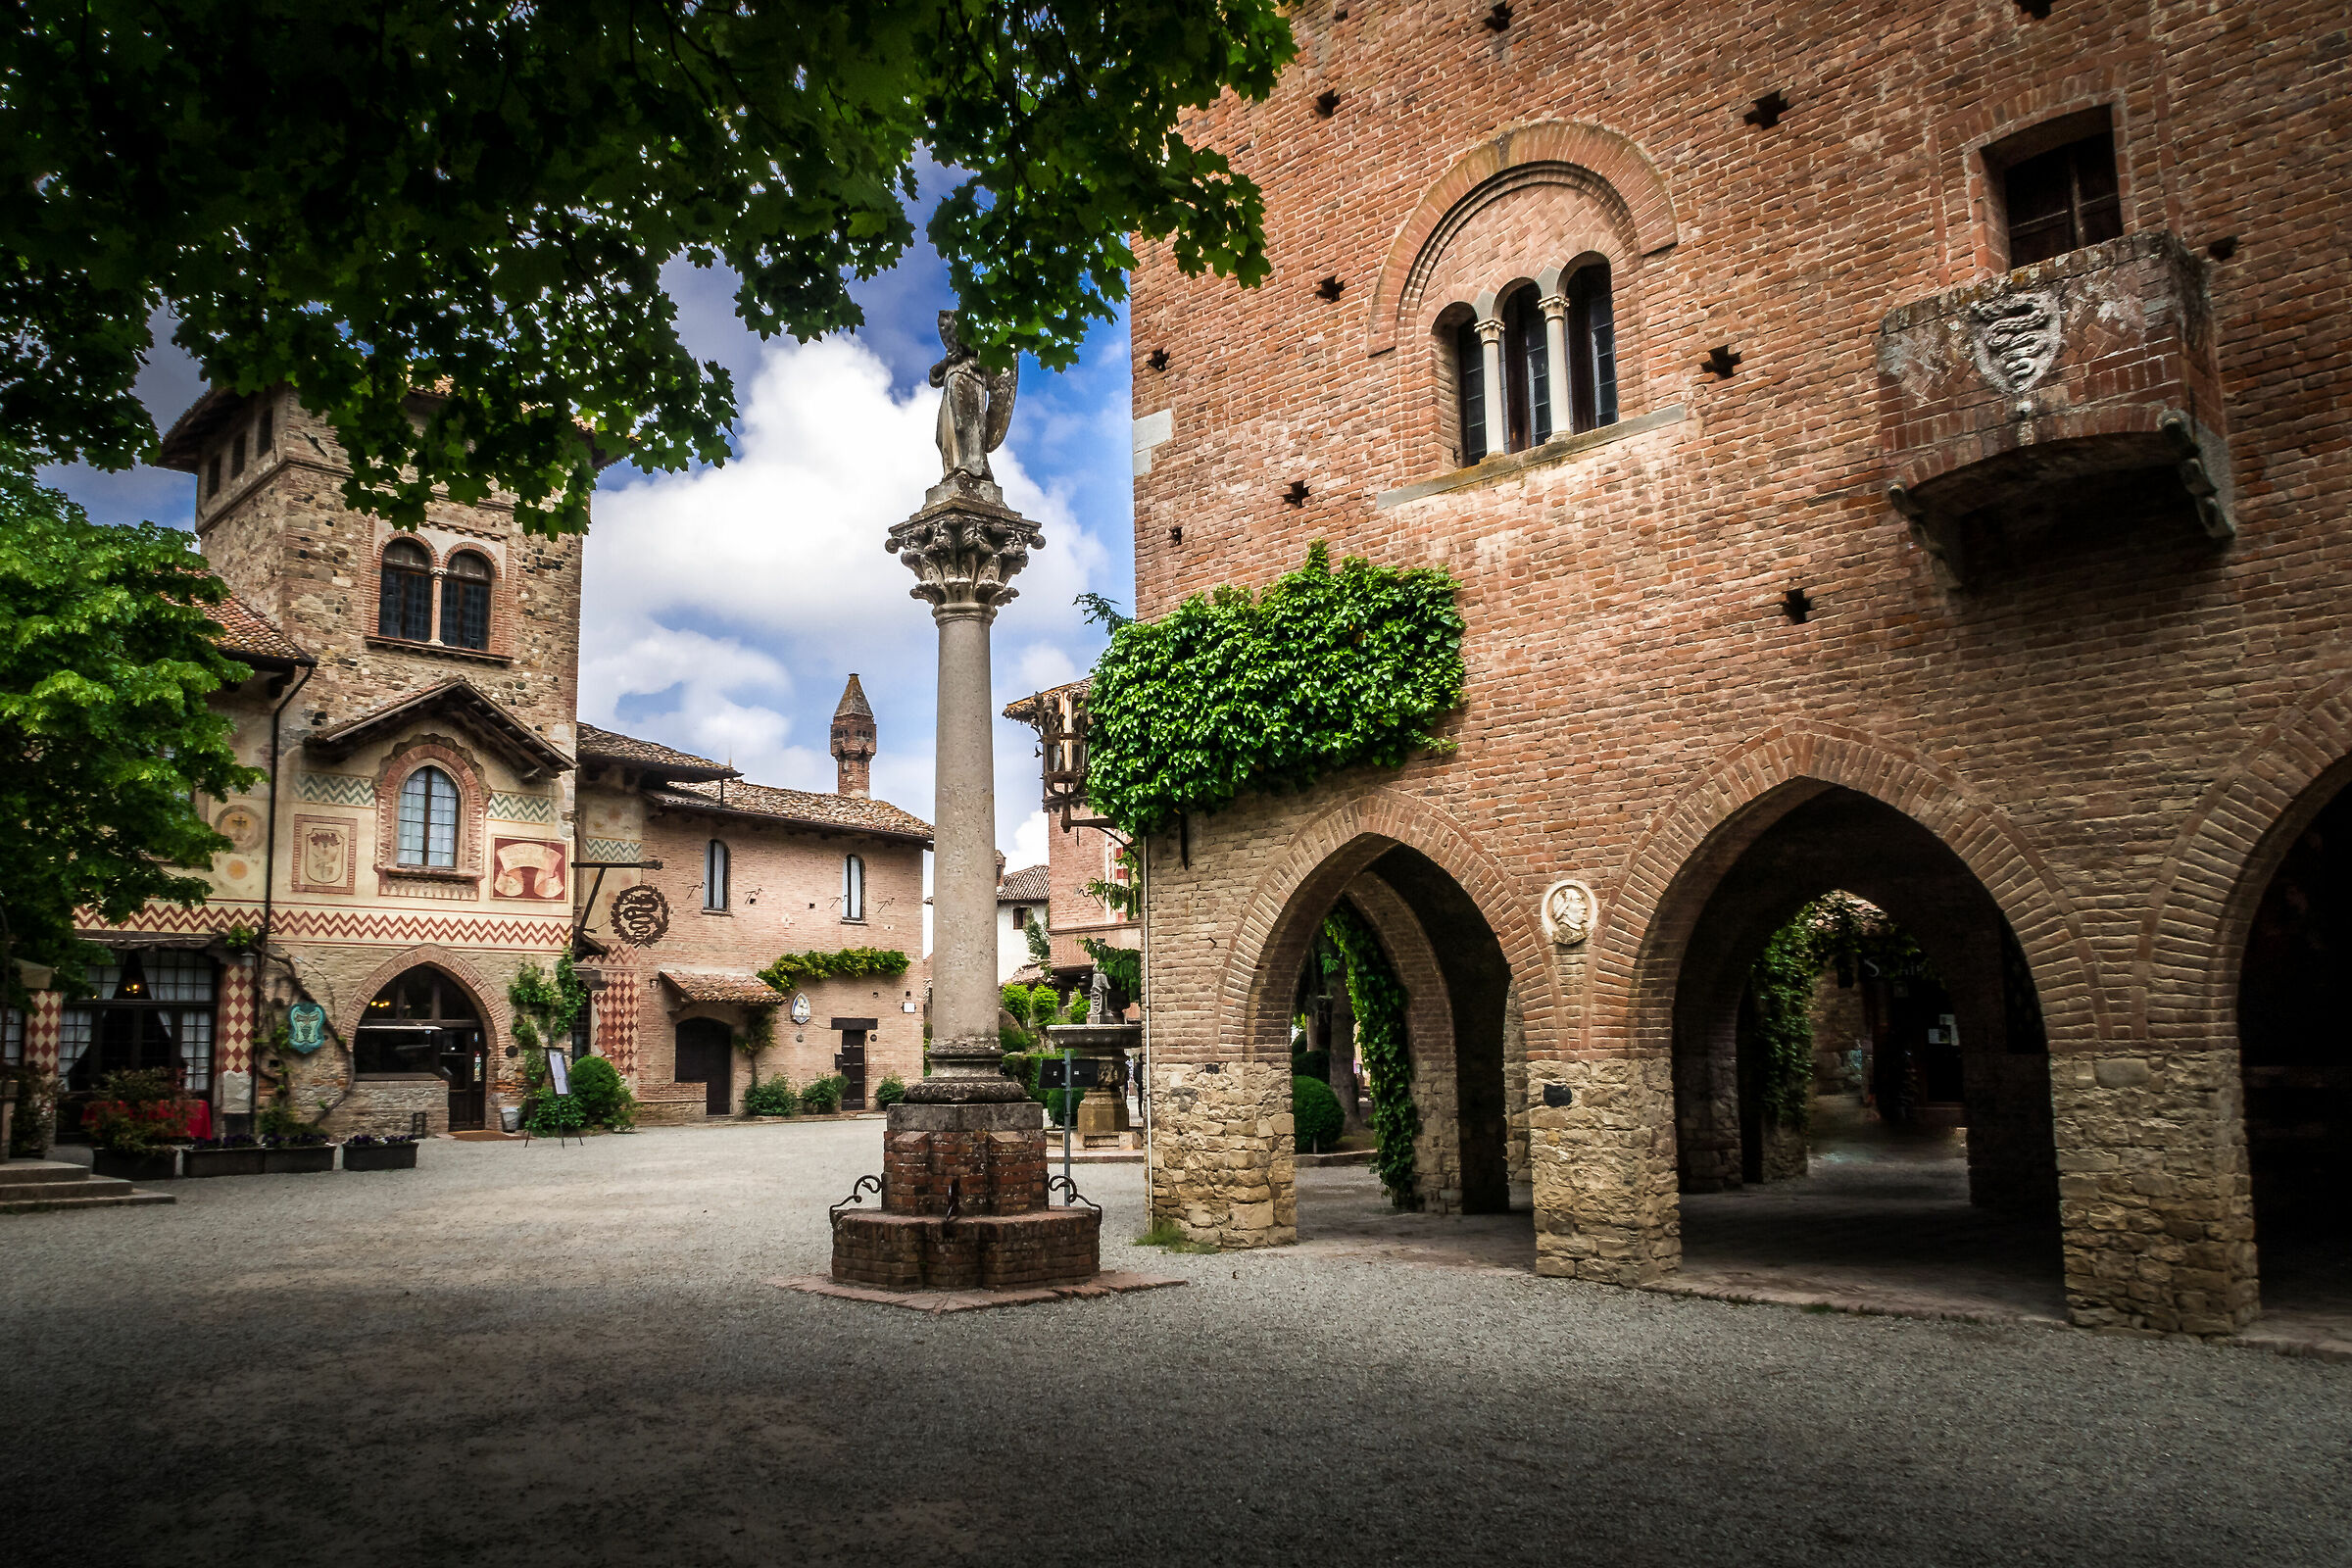 The village of Grazzano Visconti....